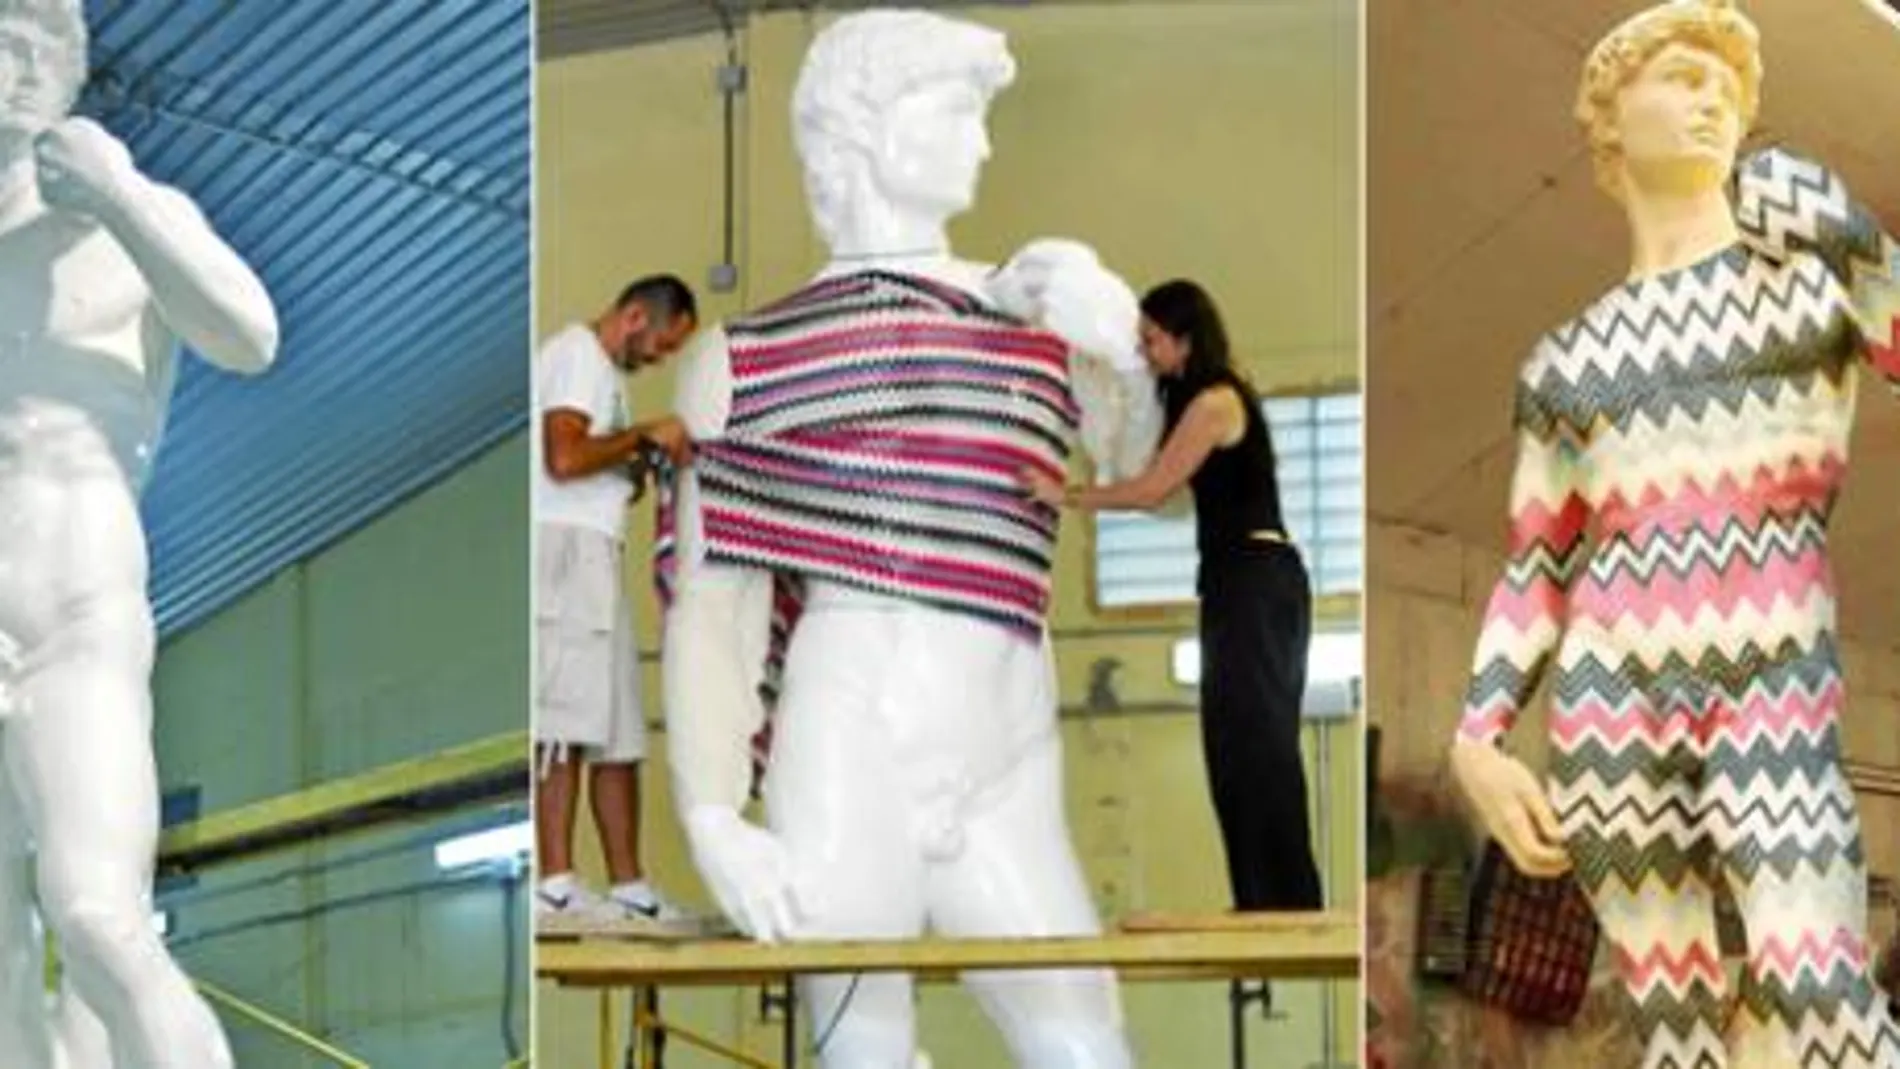 El taller madrileño de dEmo ha servido de vestidor para el particular modelo de 5 metros y 150 kilos de peso que luce una malla en zig-zag de la casa italiana